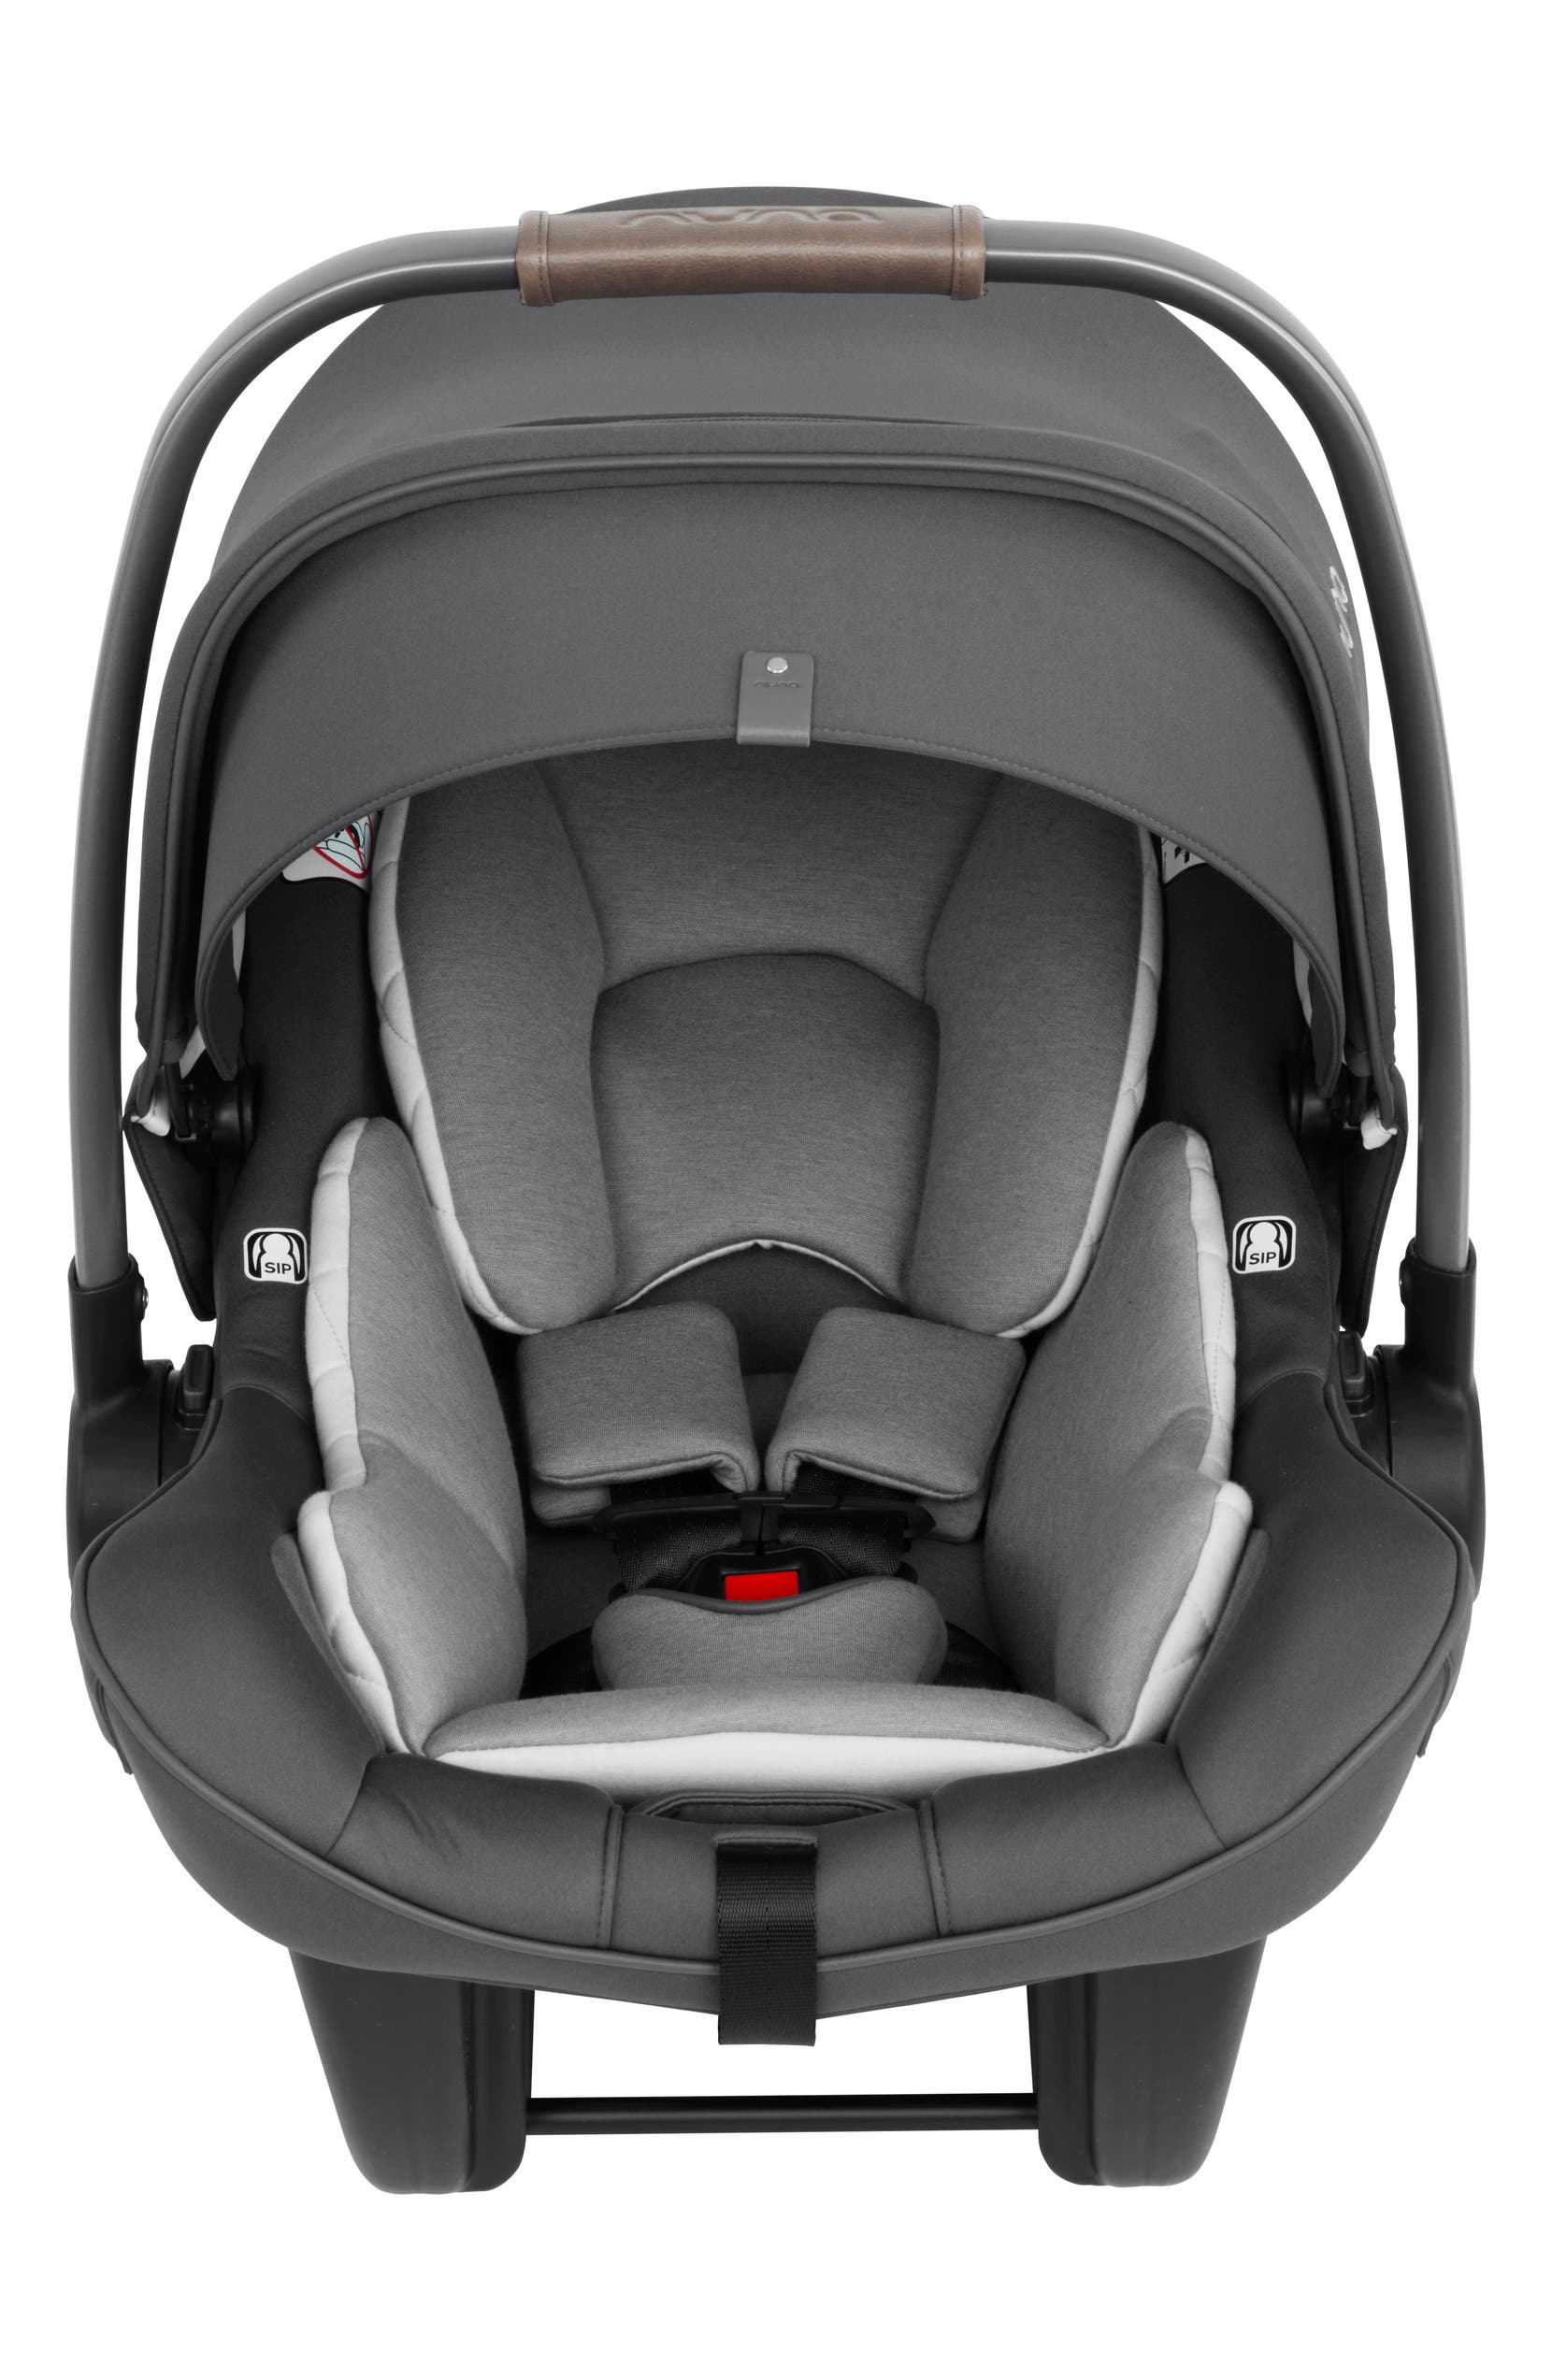  PIPA<sup>â¢</sup> Lite LX Infant Car Seat & Base, Main, color, THREADED-NORDSTROM EXCLUSIVE